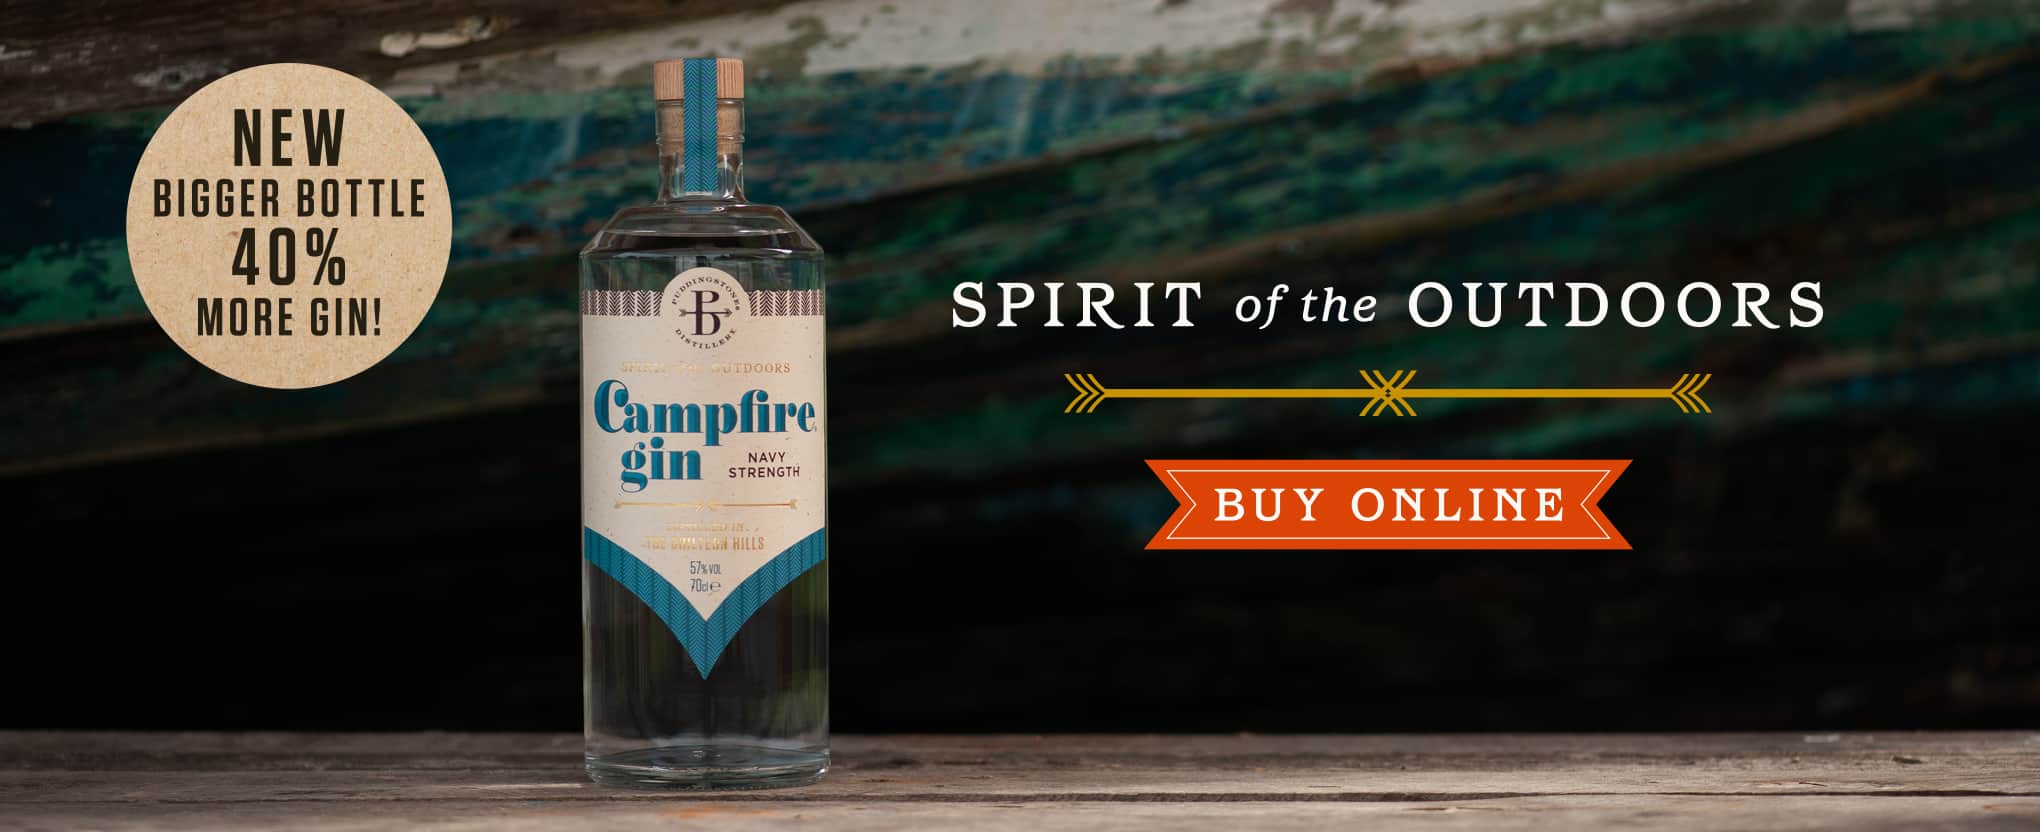 Buy Campfire Navy Strength Gin header